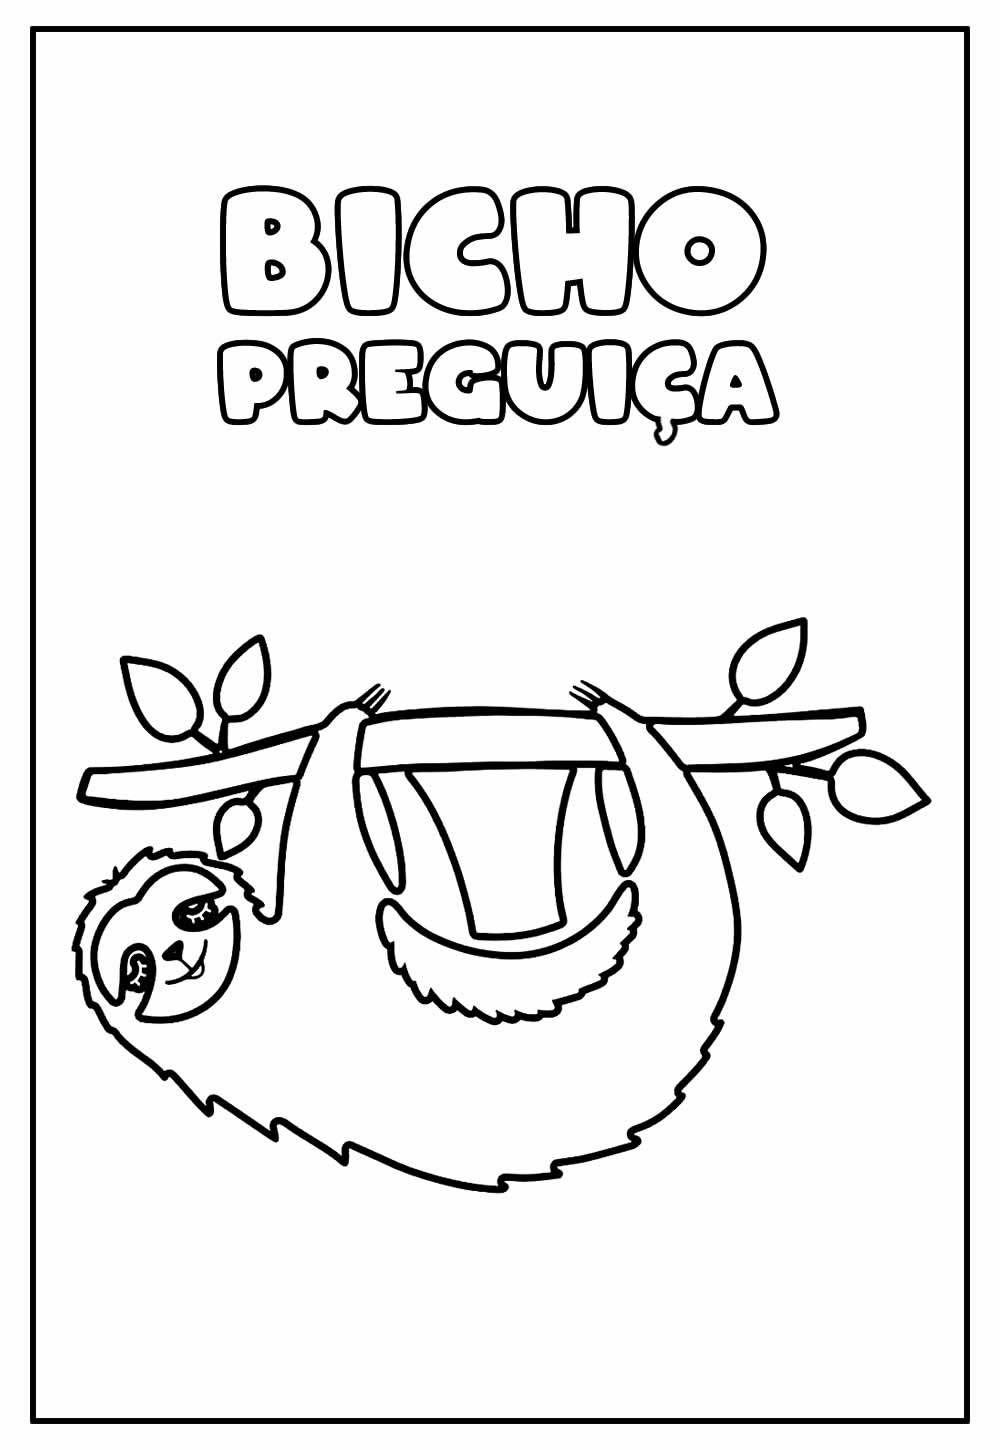 Desenho Educativo de Bicho Preguiça para colorir